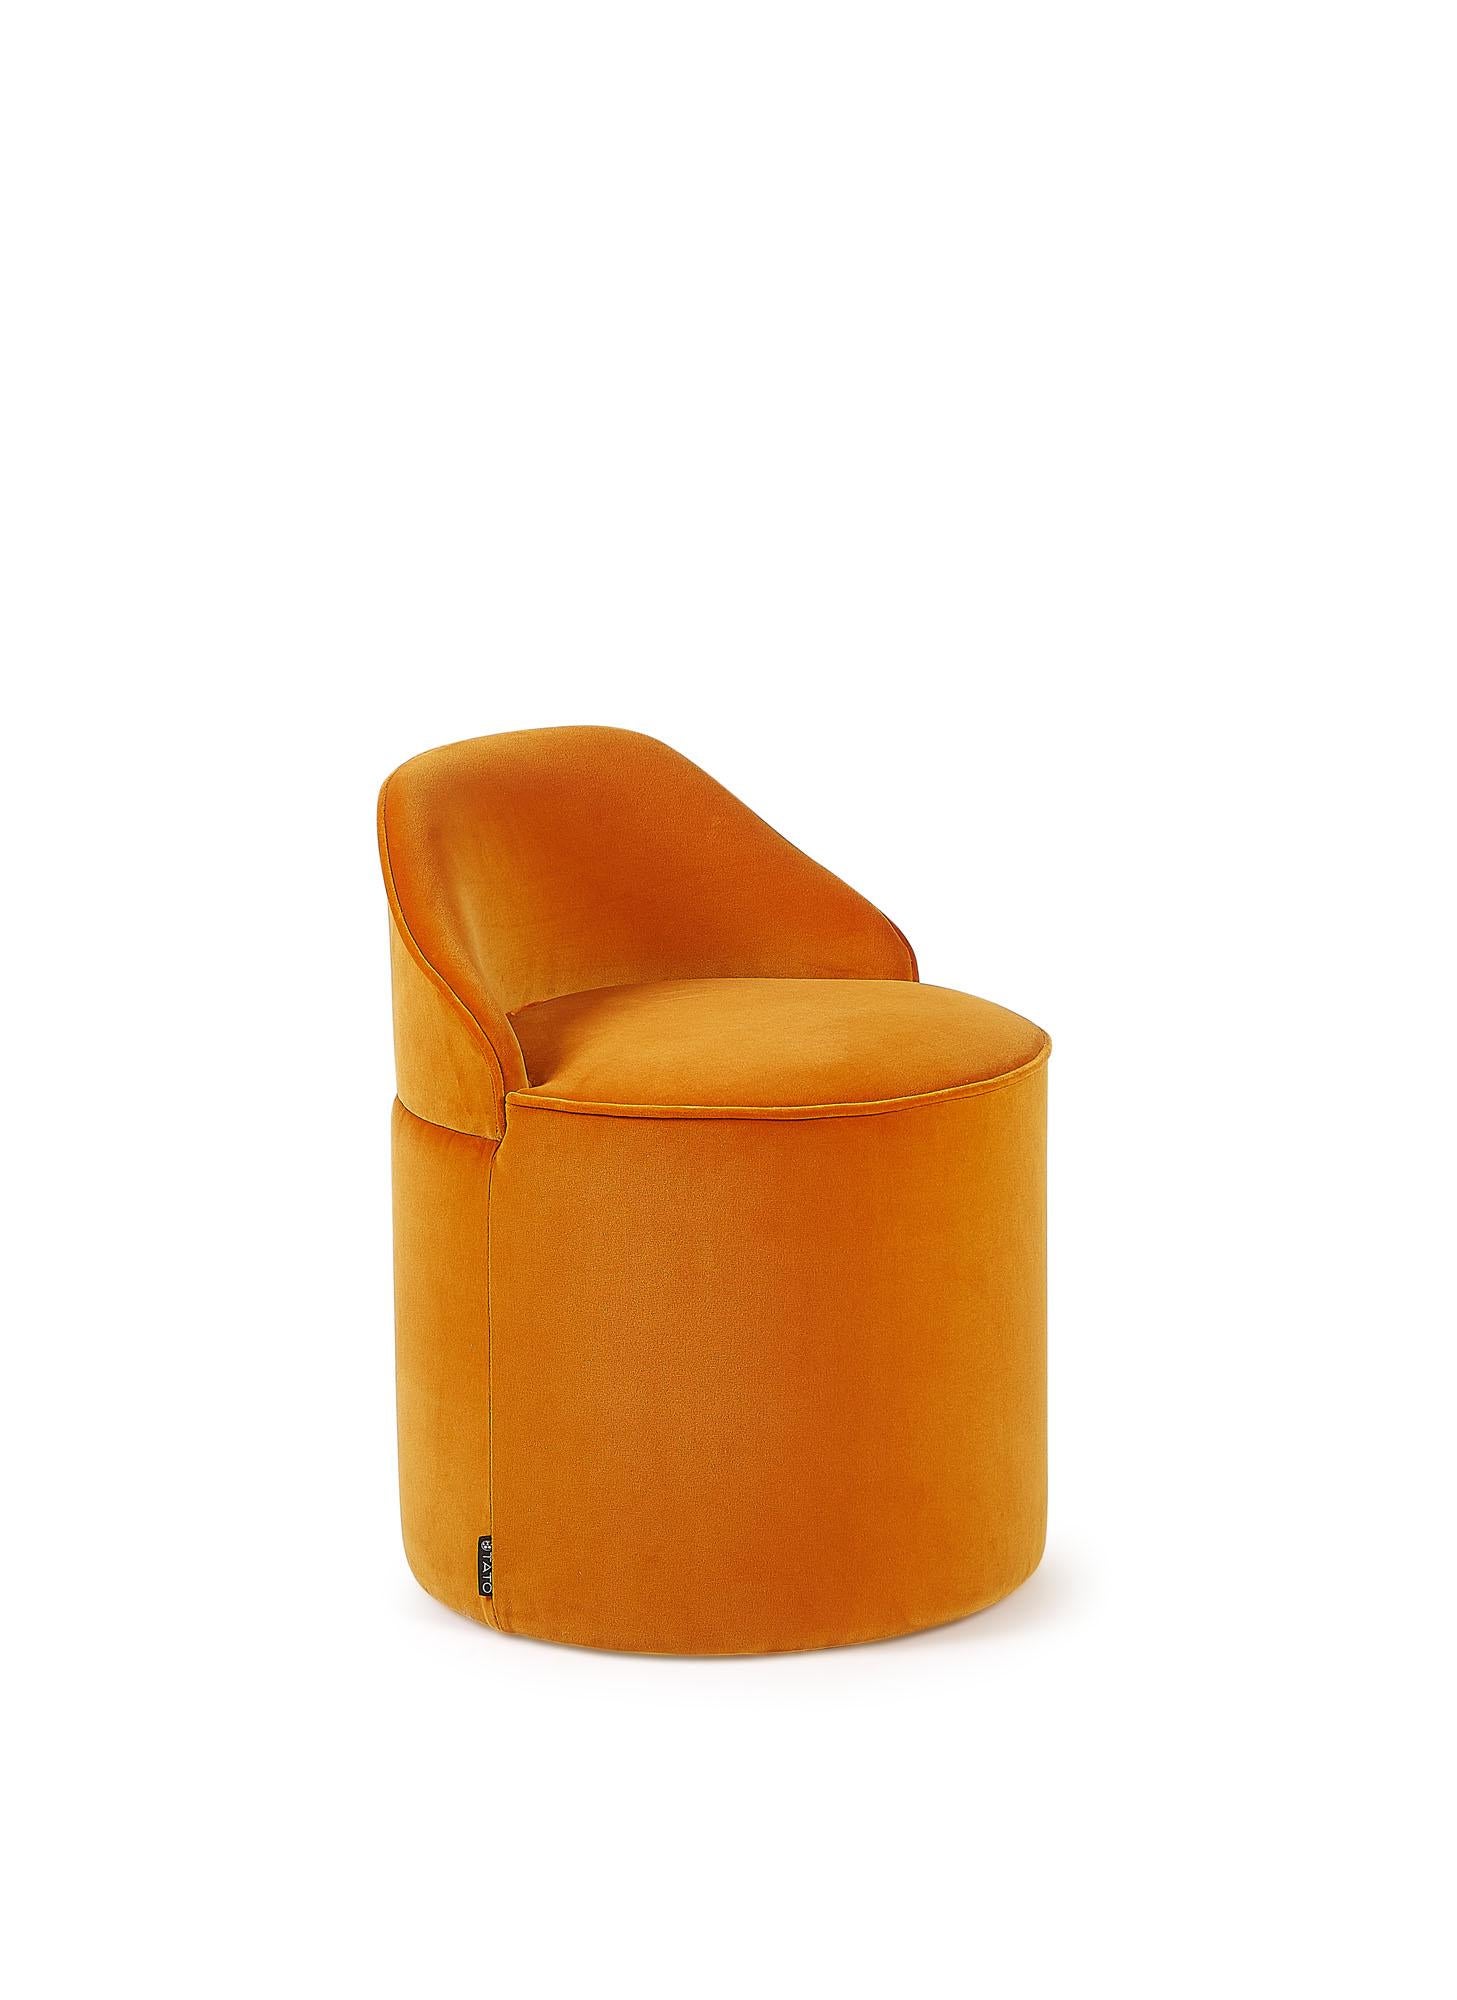 Pouf cylindrique d'une hauteur d'assise de 38 cm, recouvert de laine feutrée dans une large gamme de couleurs disponibles.

Sous la plume de Corrado Corradi Dell'Acqua, TATO récupère ce joyau caché conçu en 1961, qui consiste en un trio de poufs